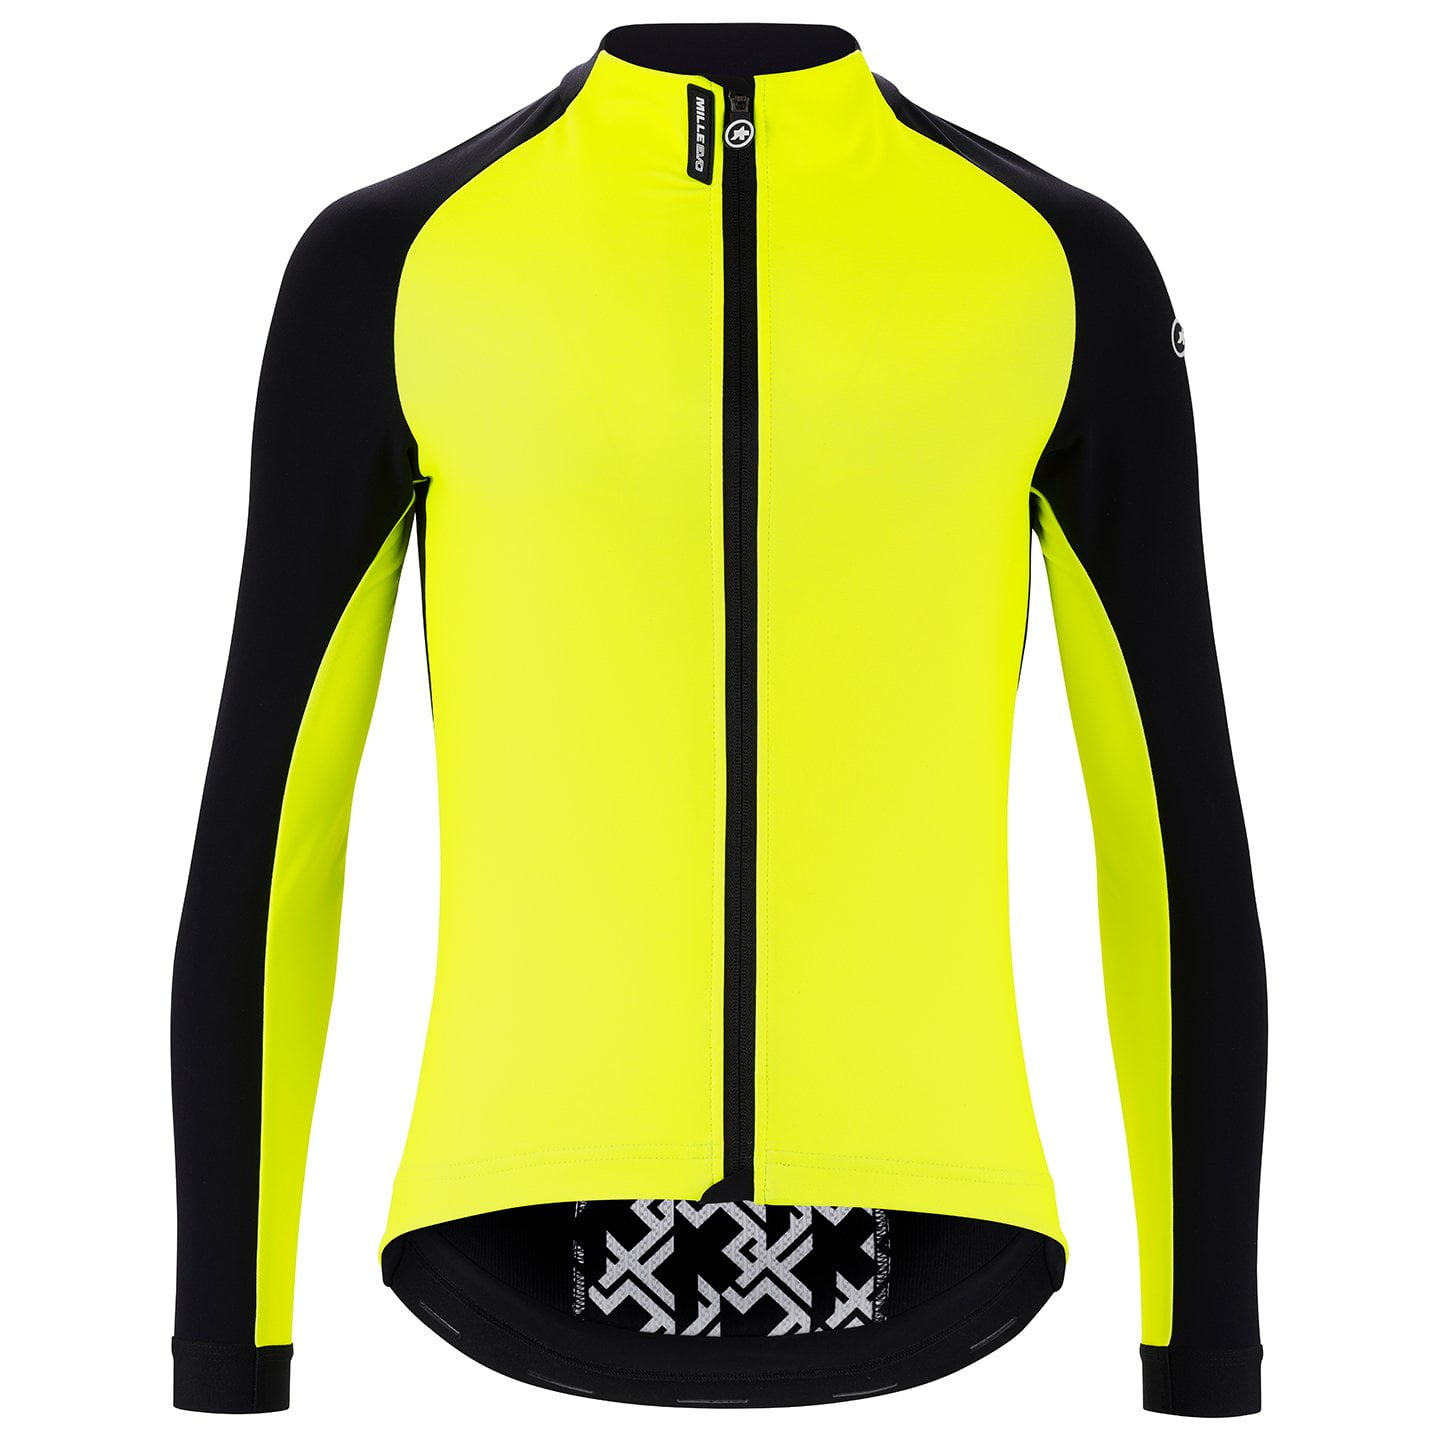 ASSOS Mille GT Evo Winter Jacket Thermal Jacket, for men, size S, Winter jacket, Bike gear